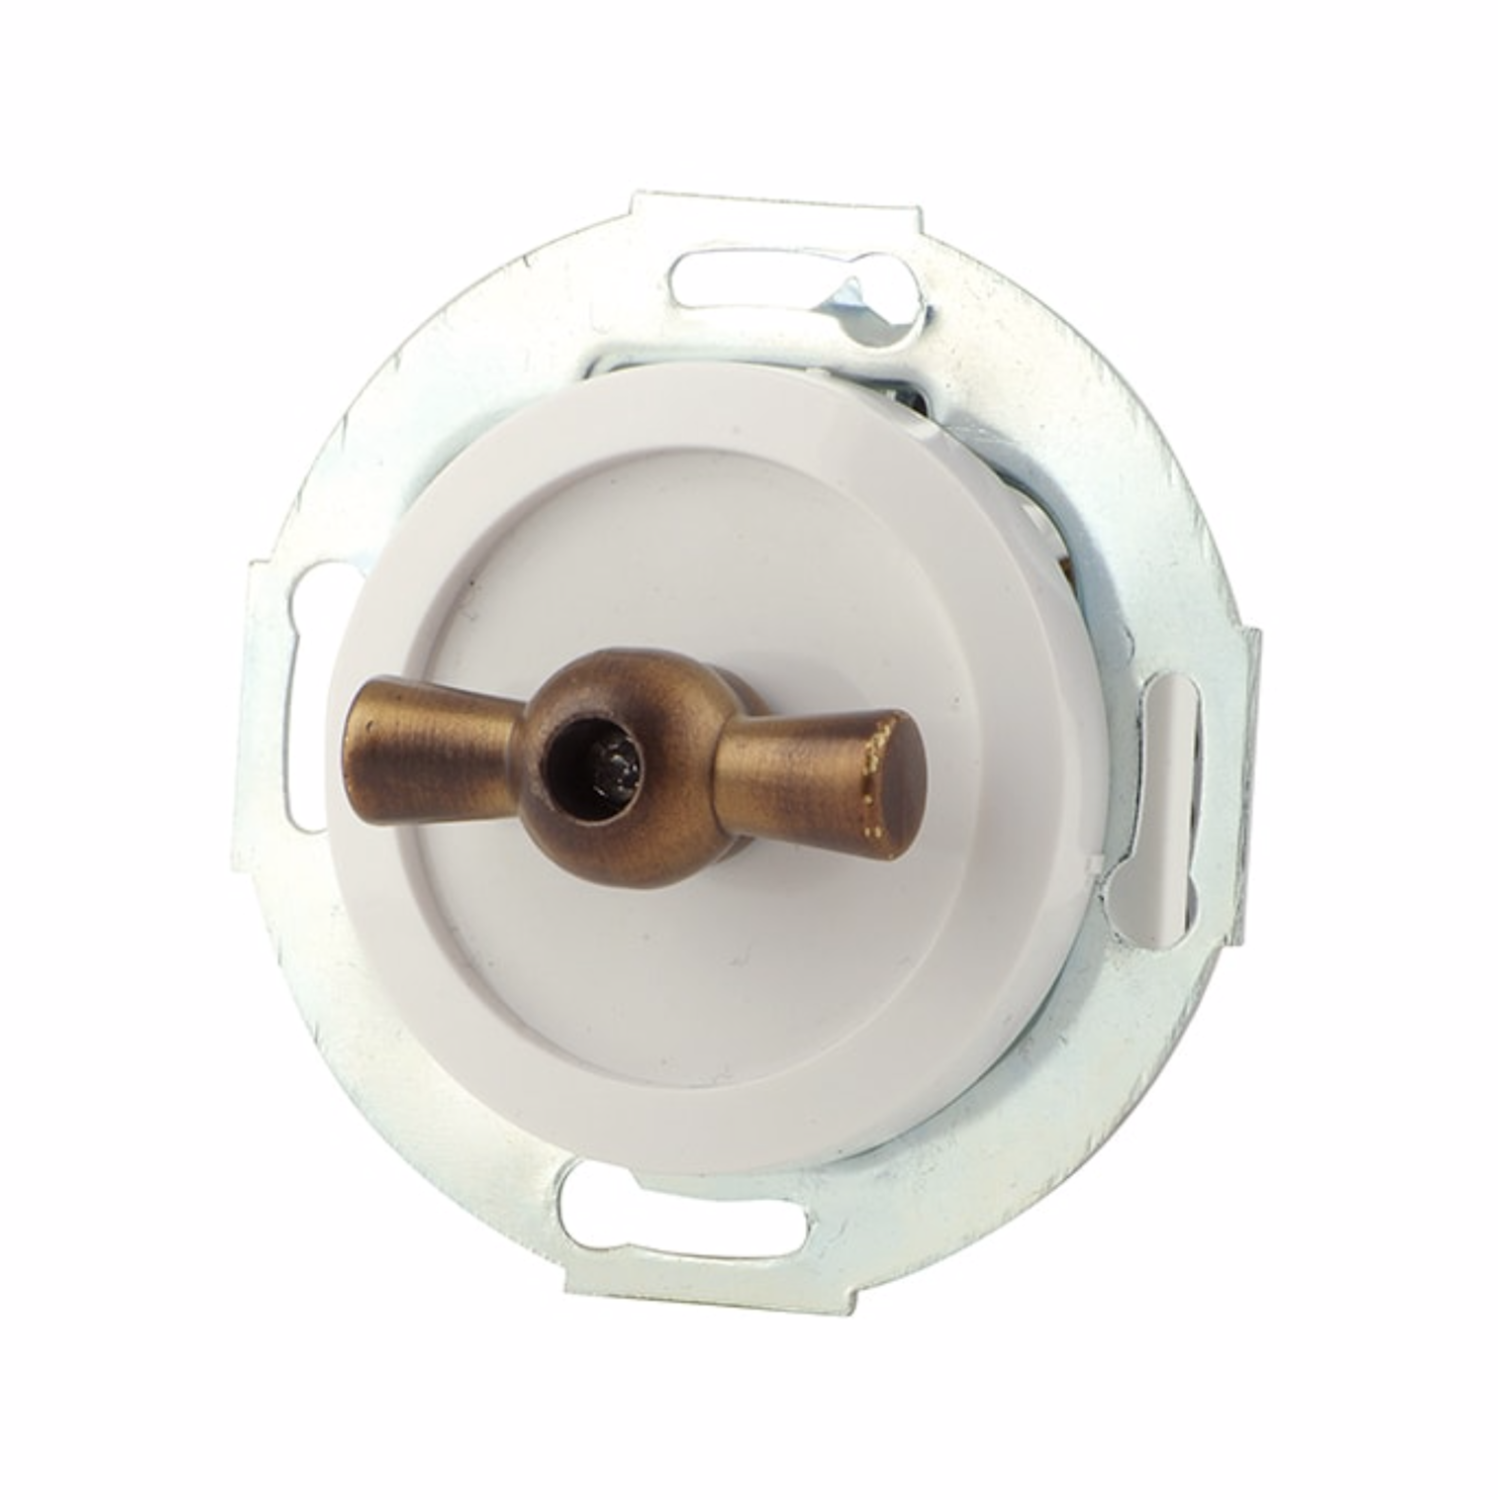 White rotary switch, bronze handle